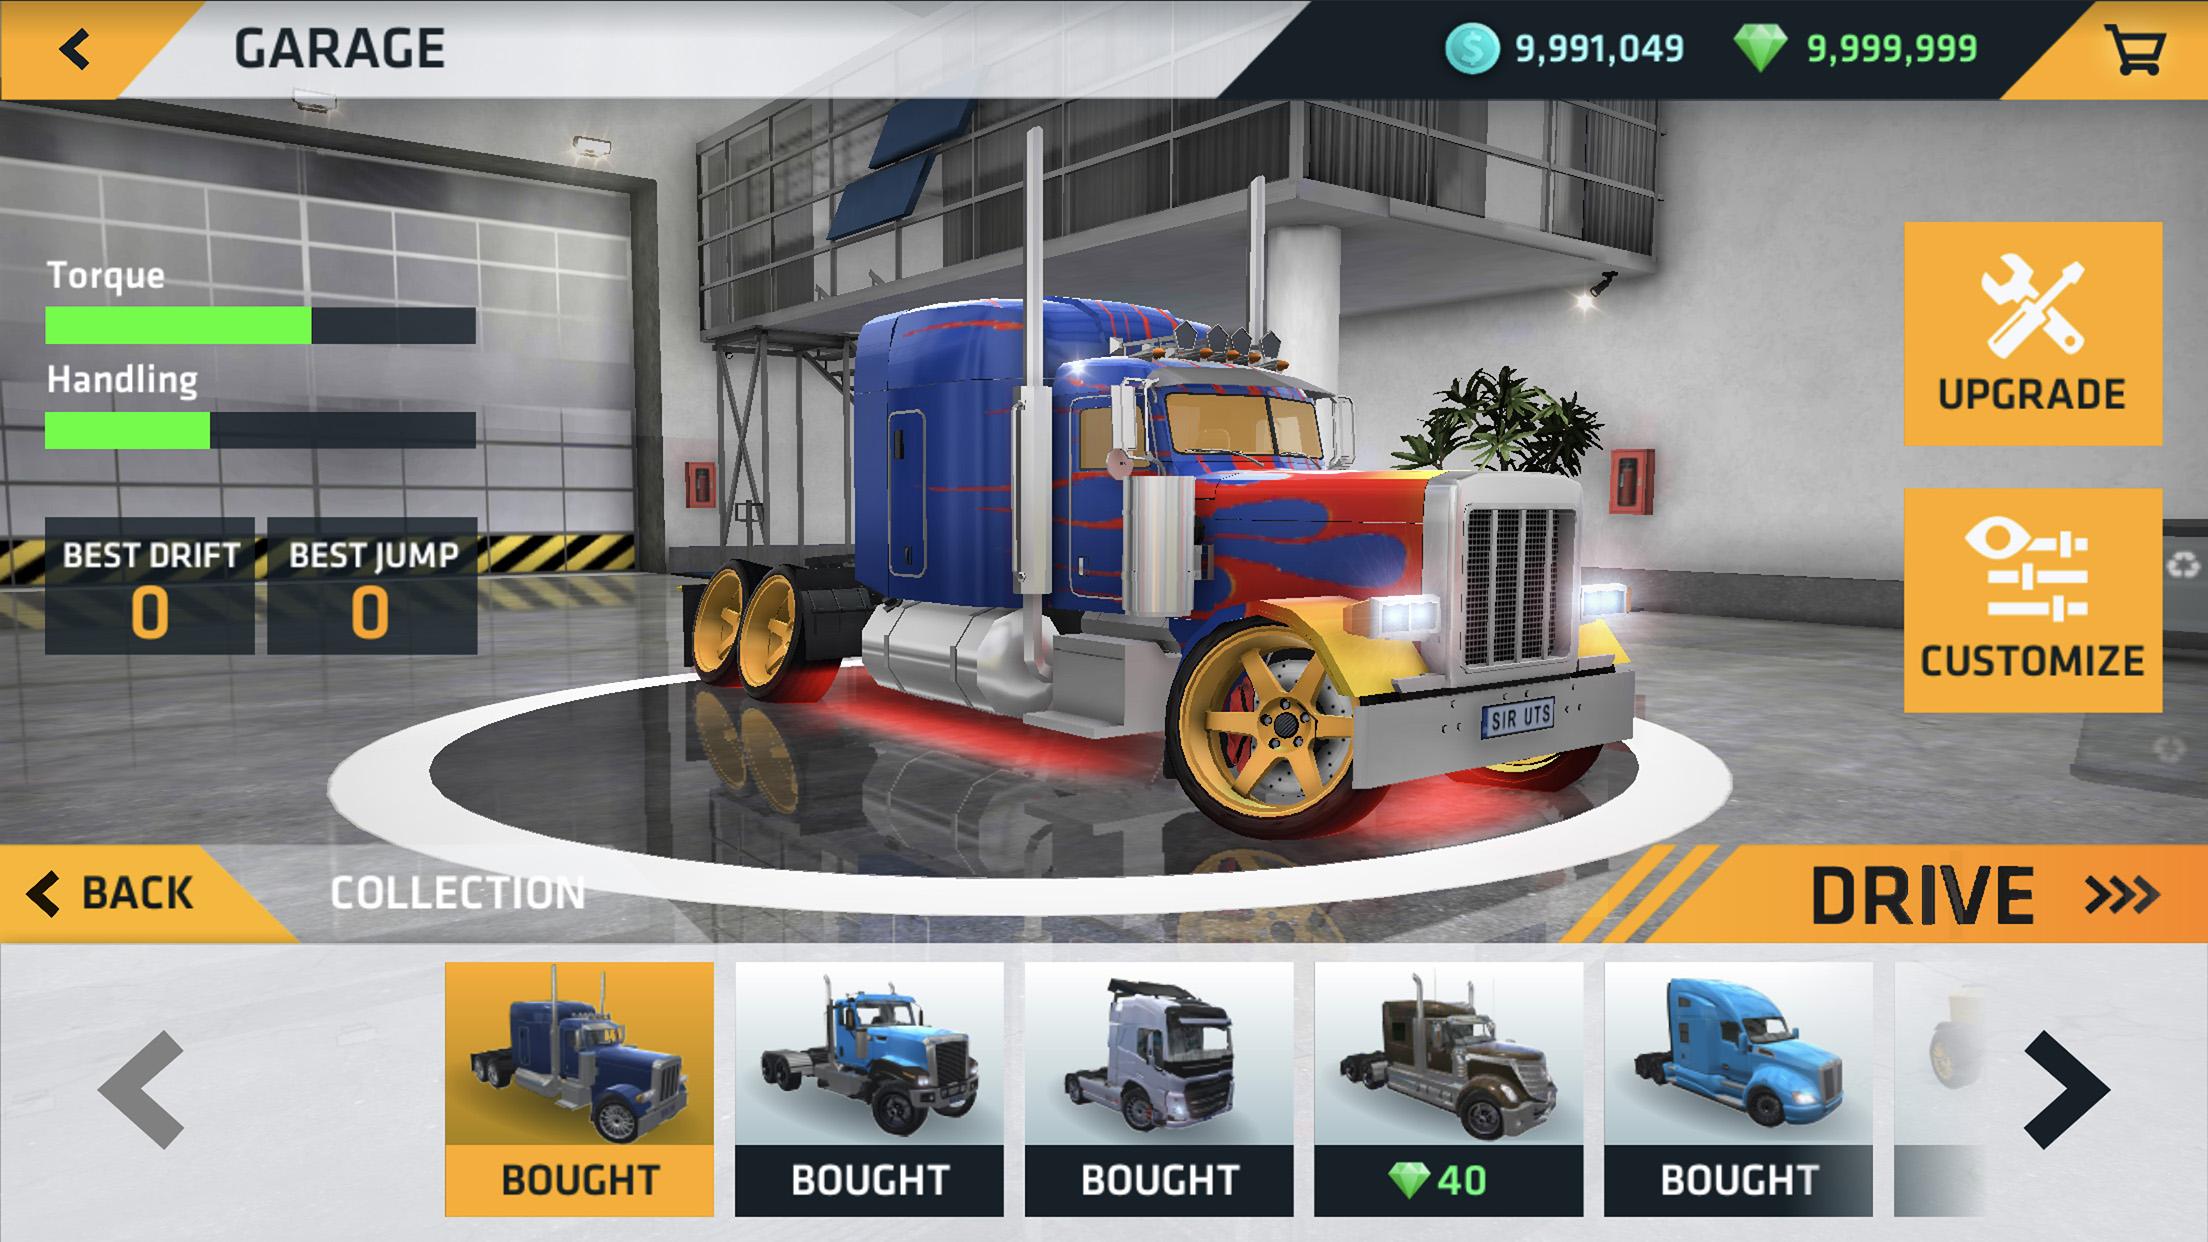 ultimate truck simulator mod apk